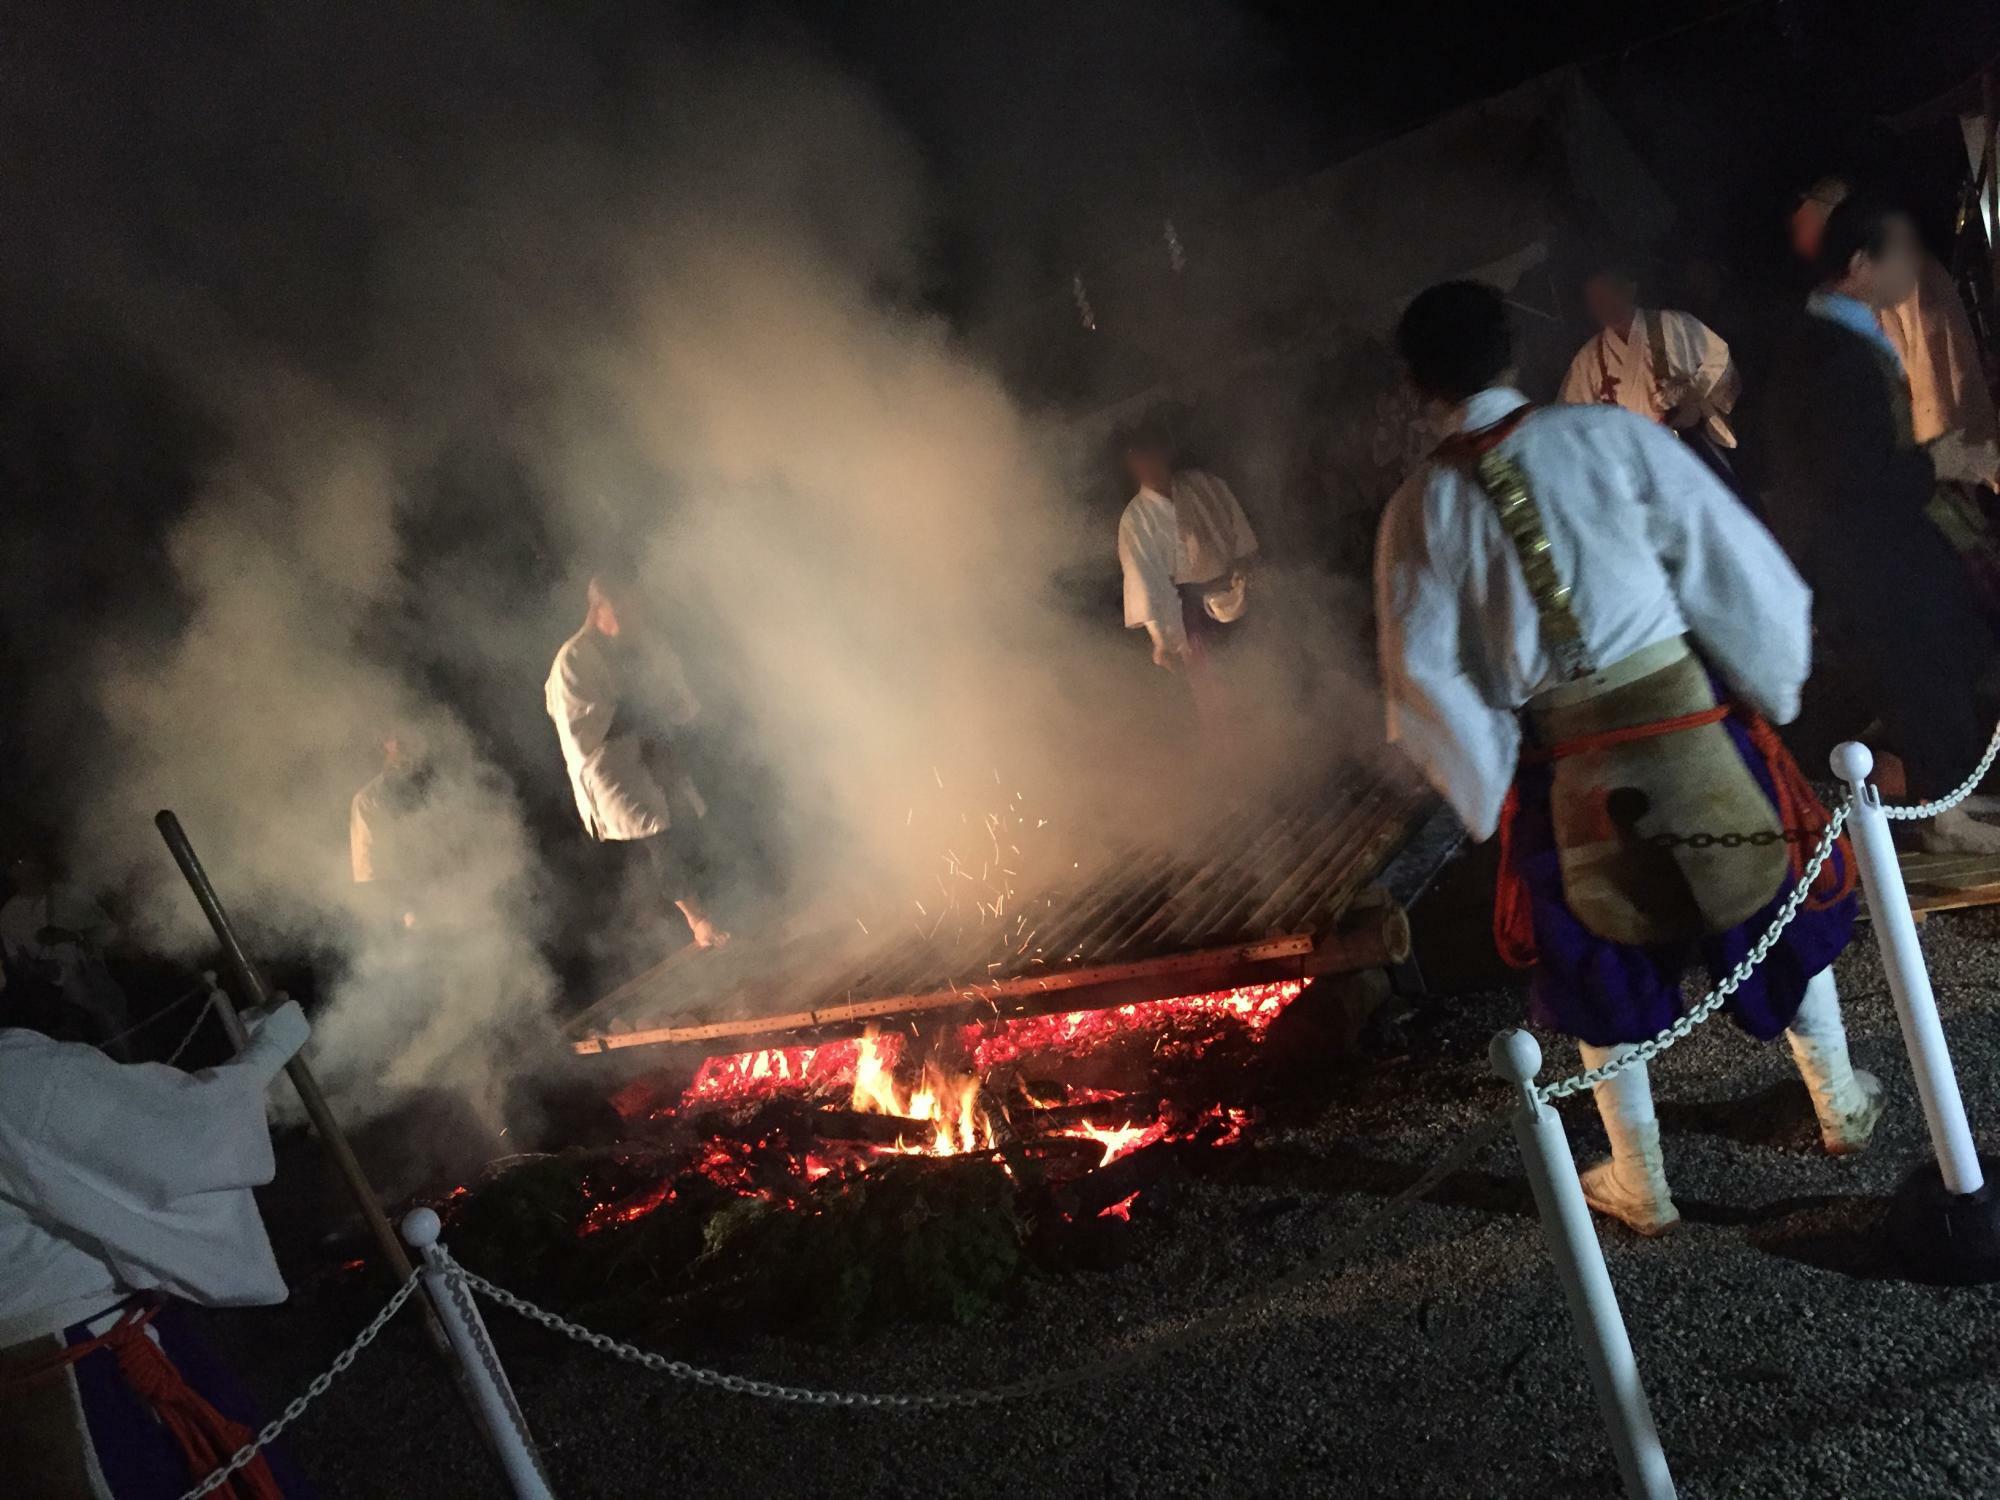 天川村龍泉寺の火渡りの儀式